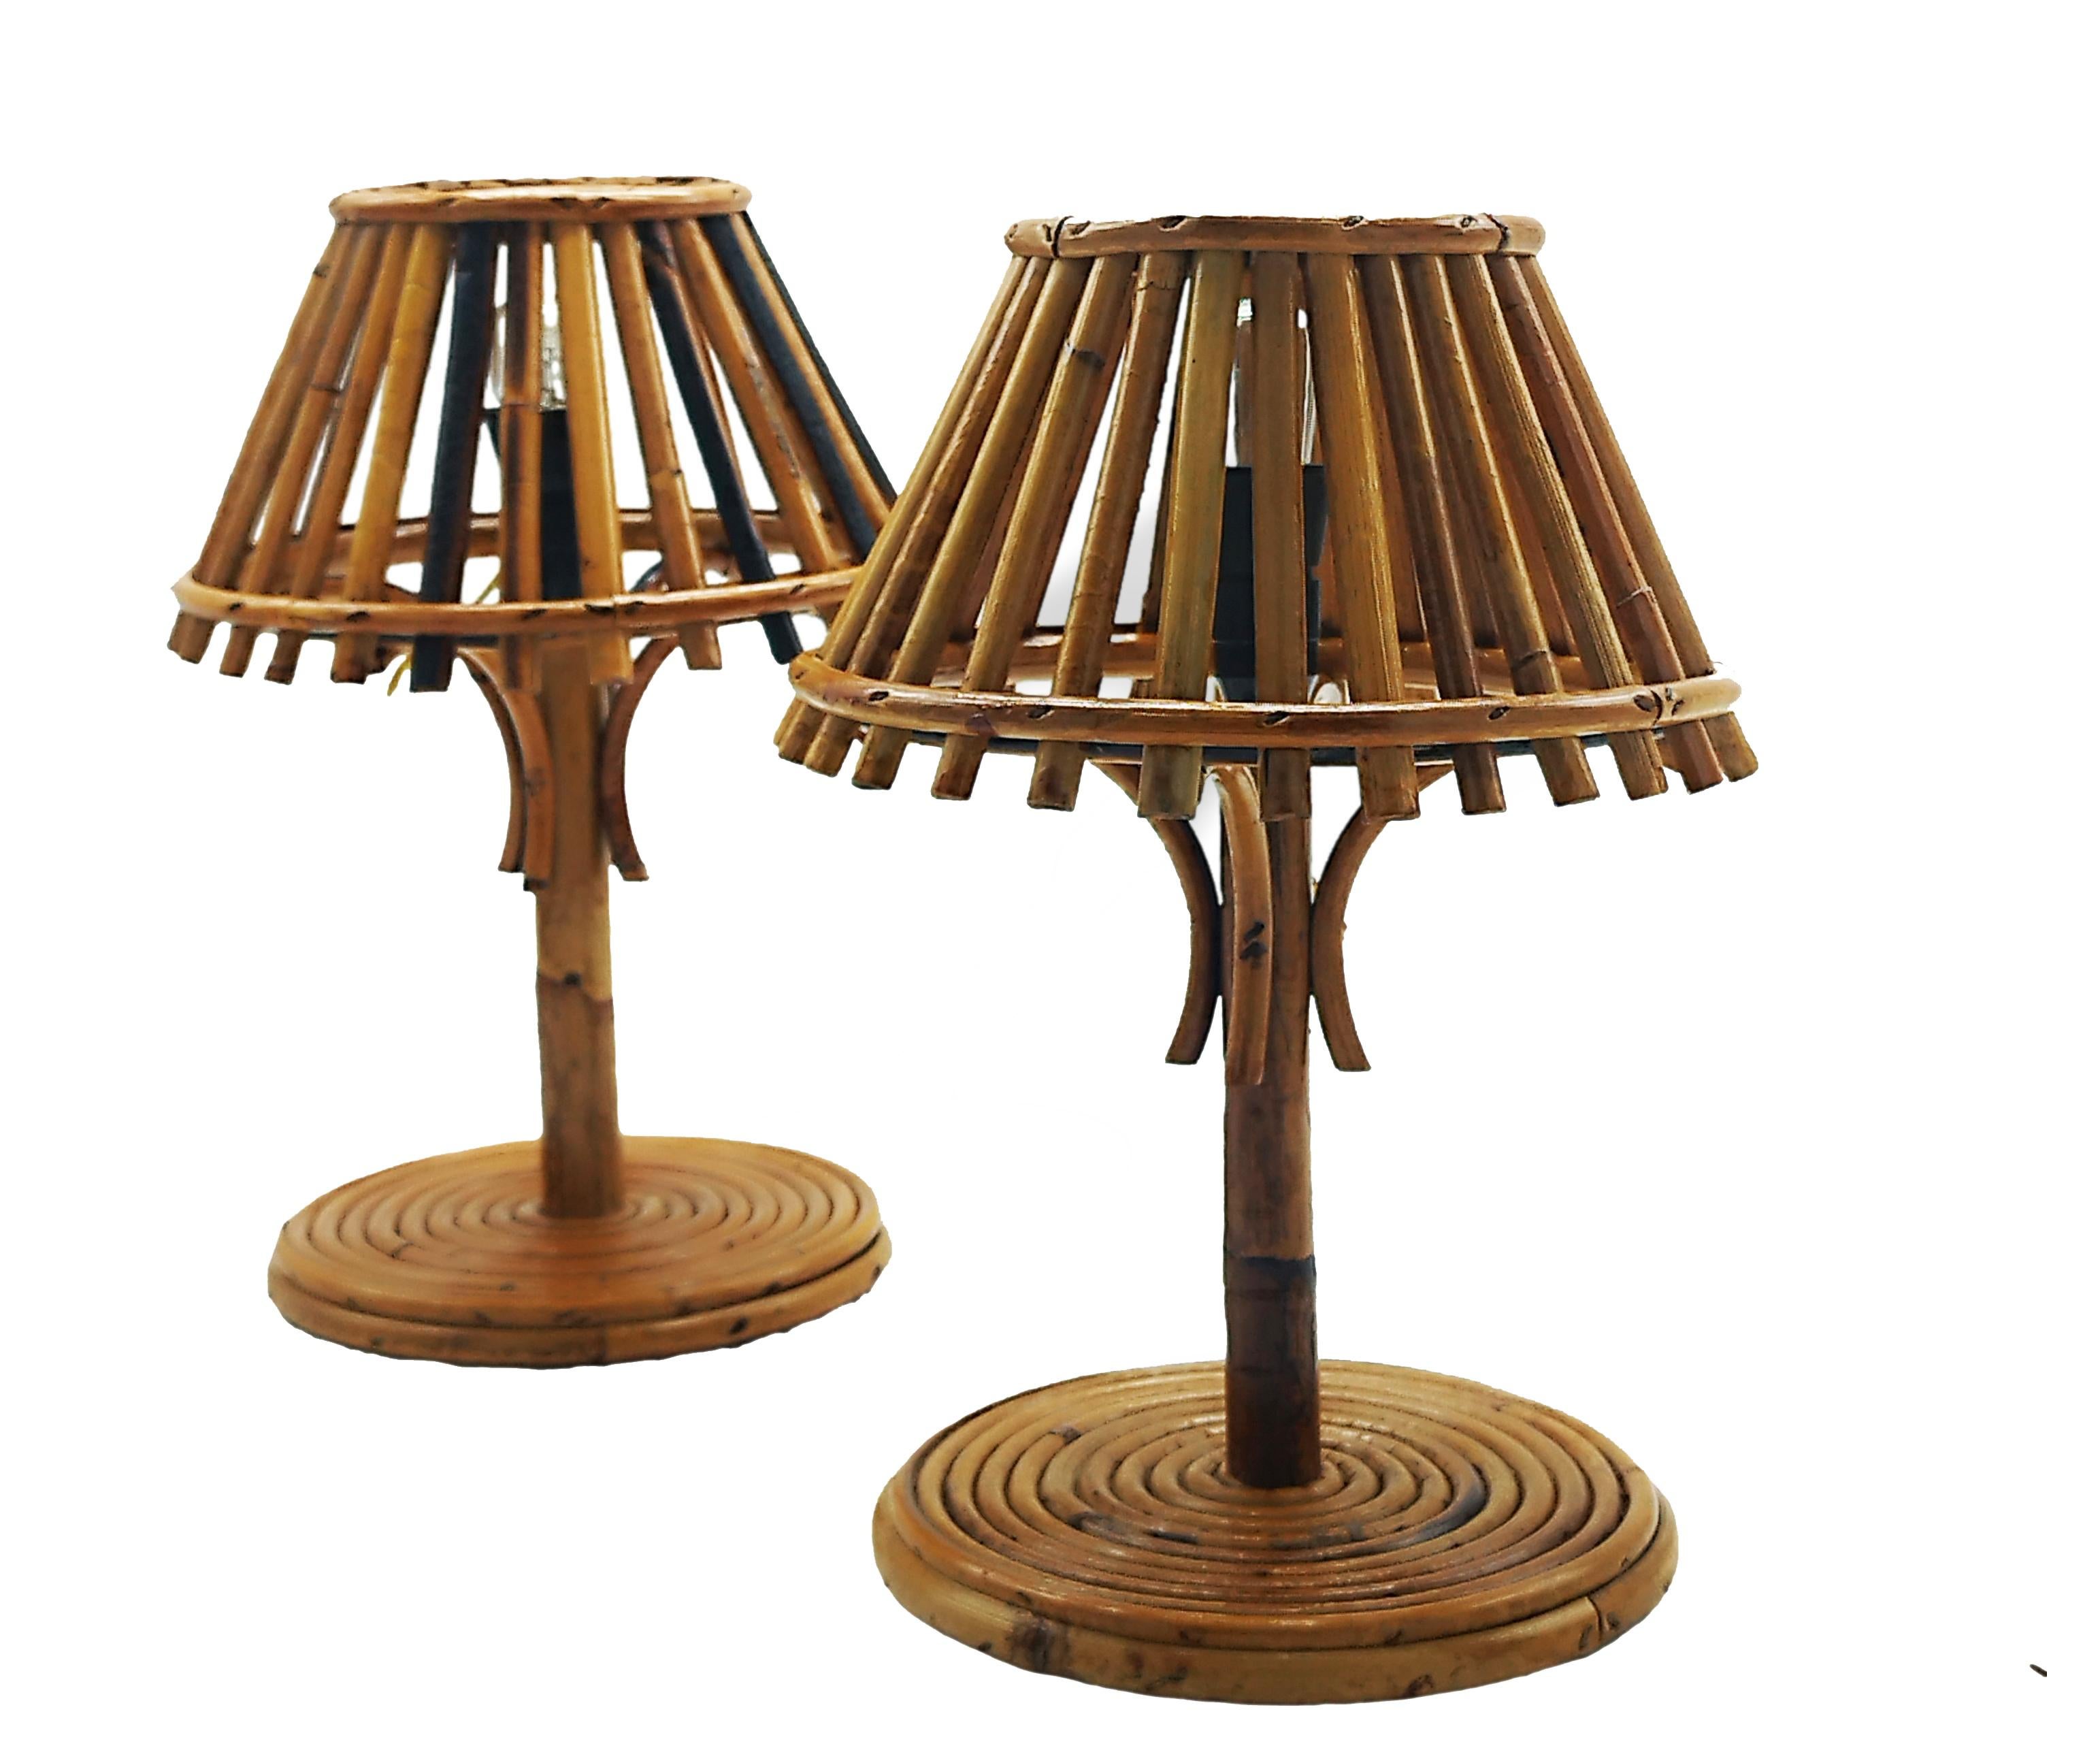 Schönes Paar Tischlampen aus Bambus und Rattan im Stil von Louis Sognot.
Hergestellt in Italien in den 1960er Jahren.